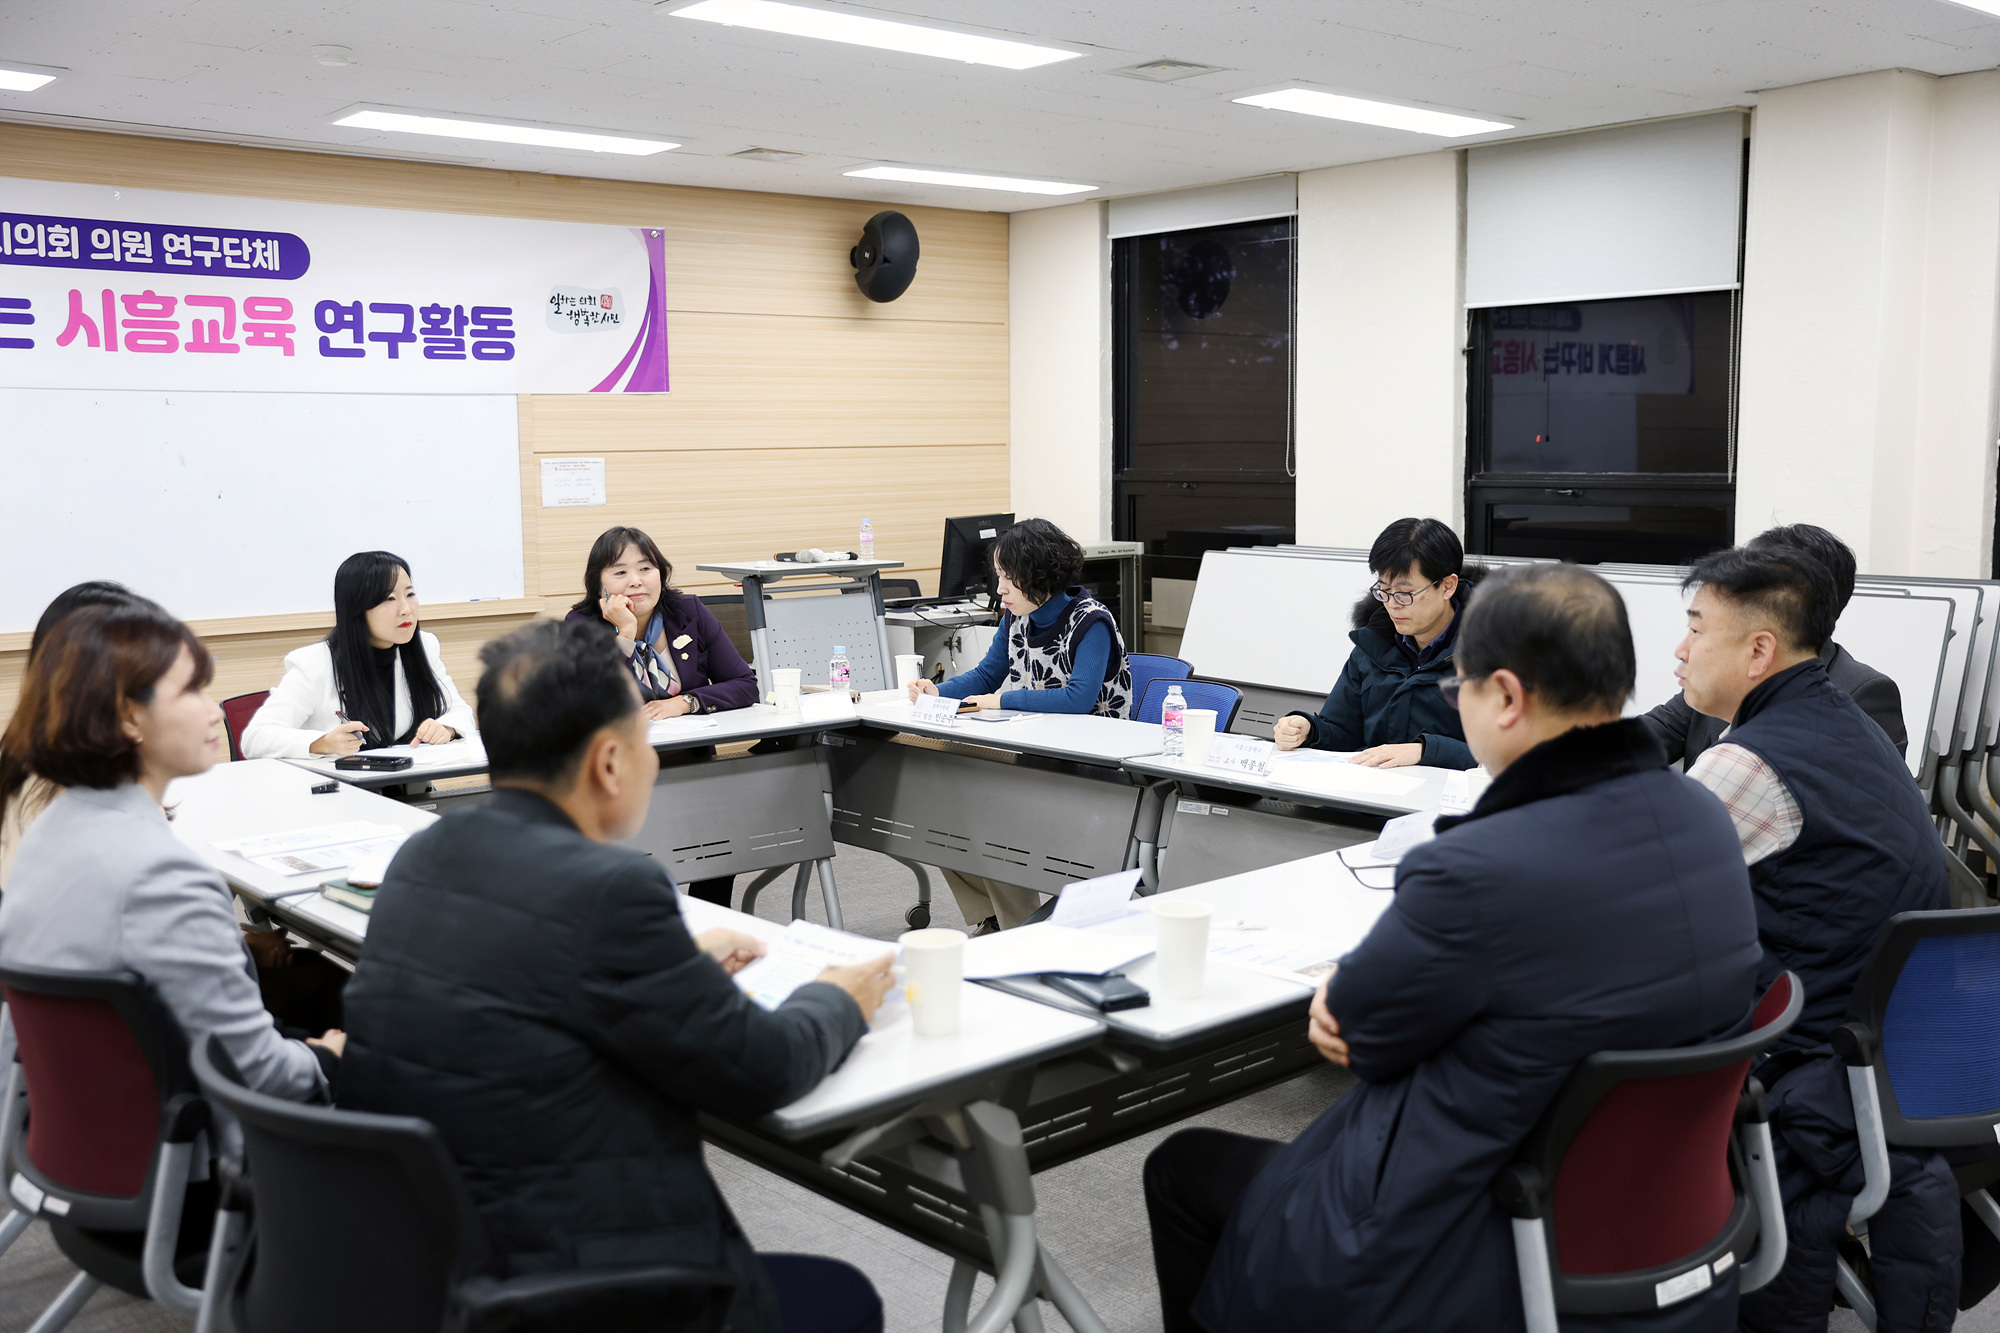 시흥시의회 의원 연구단체, 새롭게 바꾸는 시흥교육을 위한 간담회 개최 